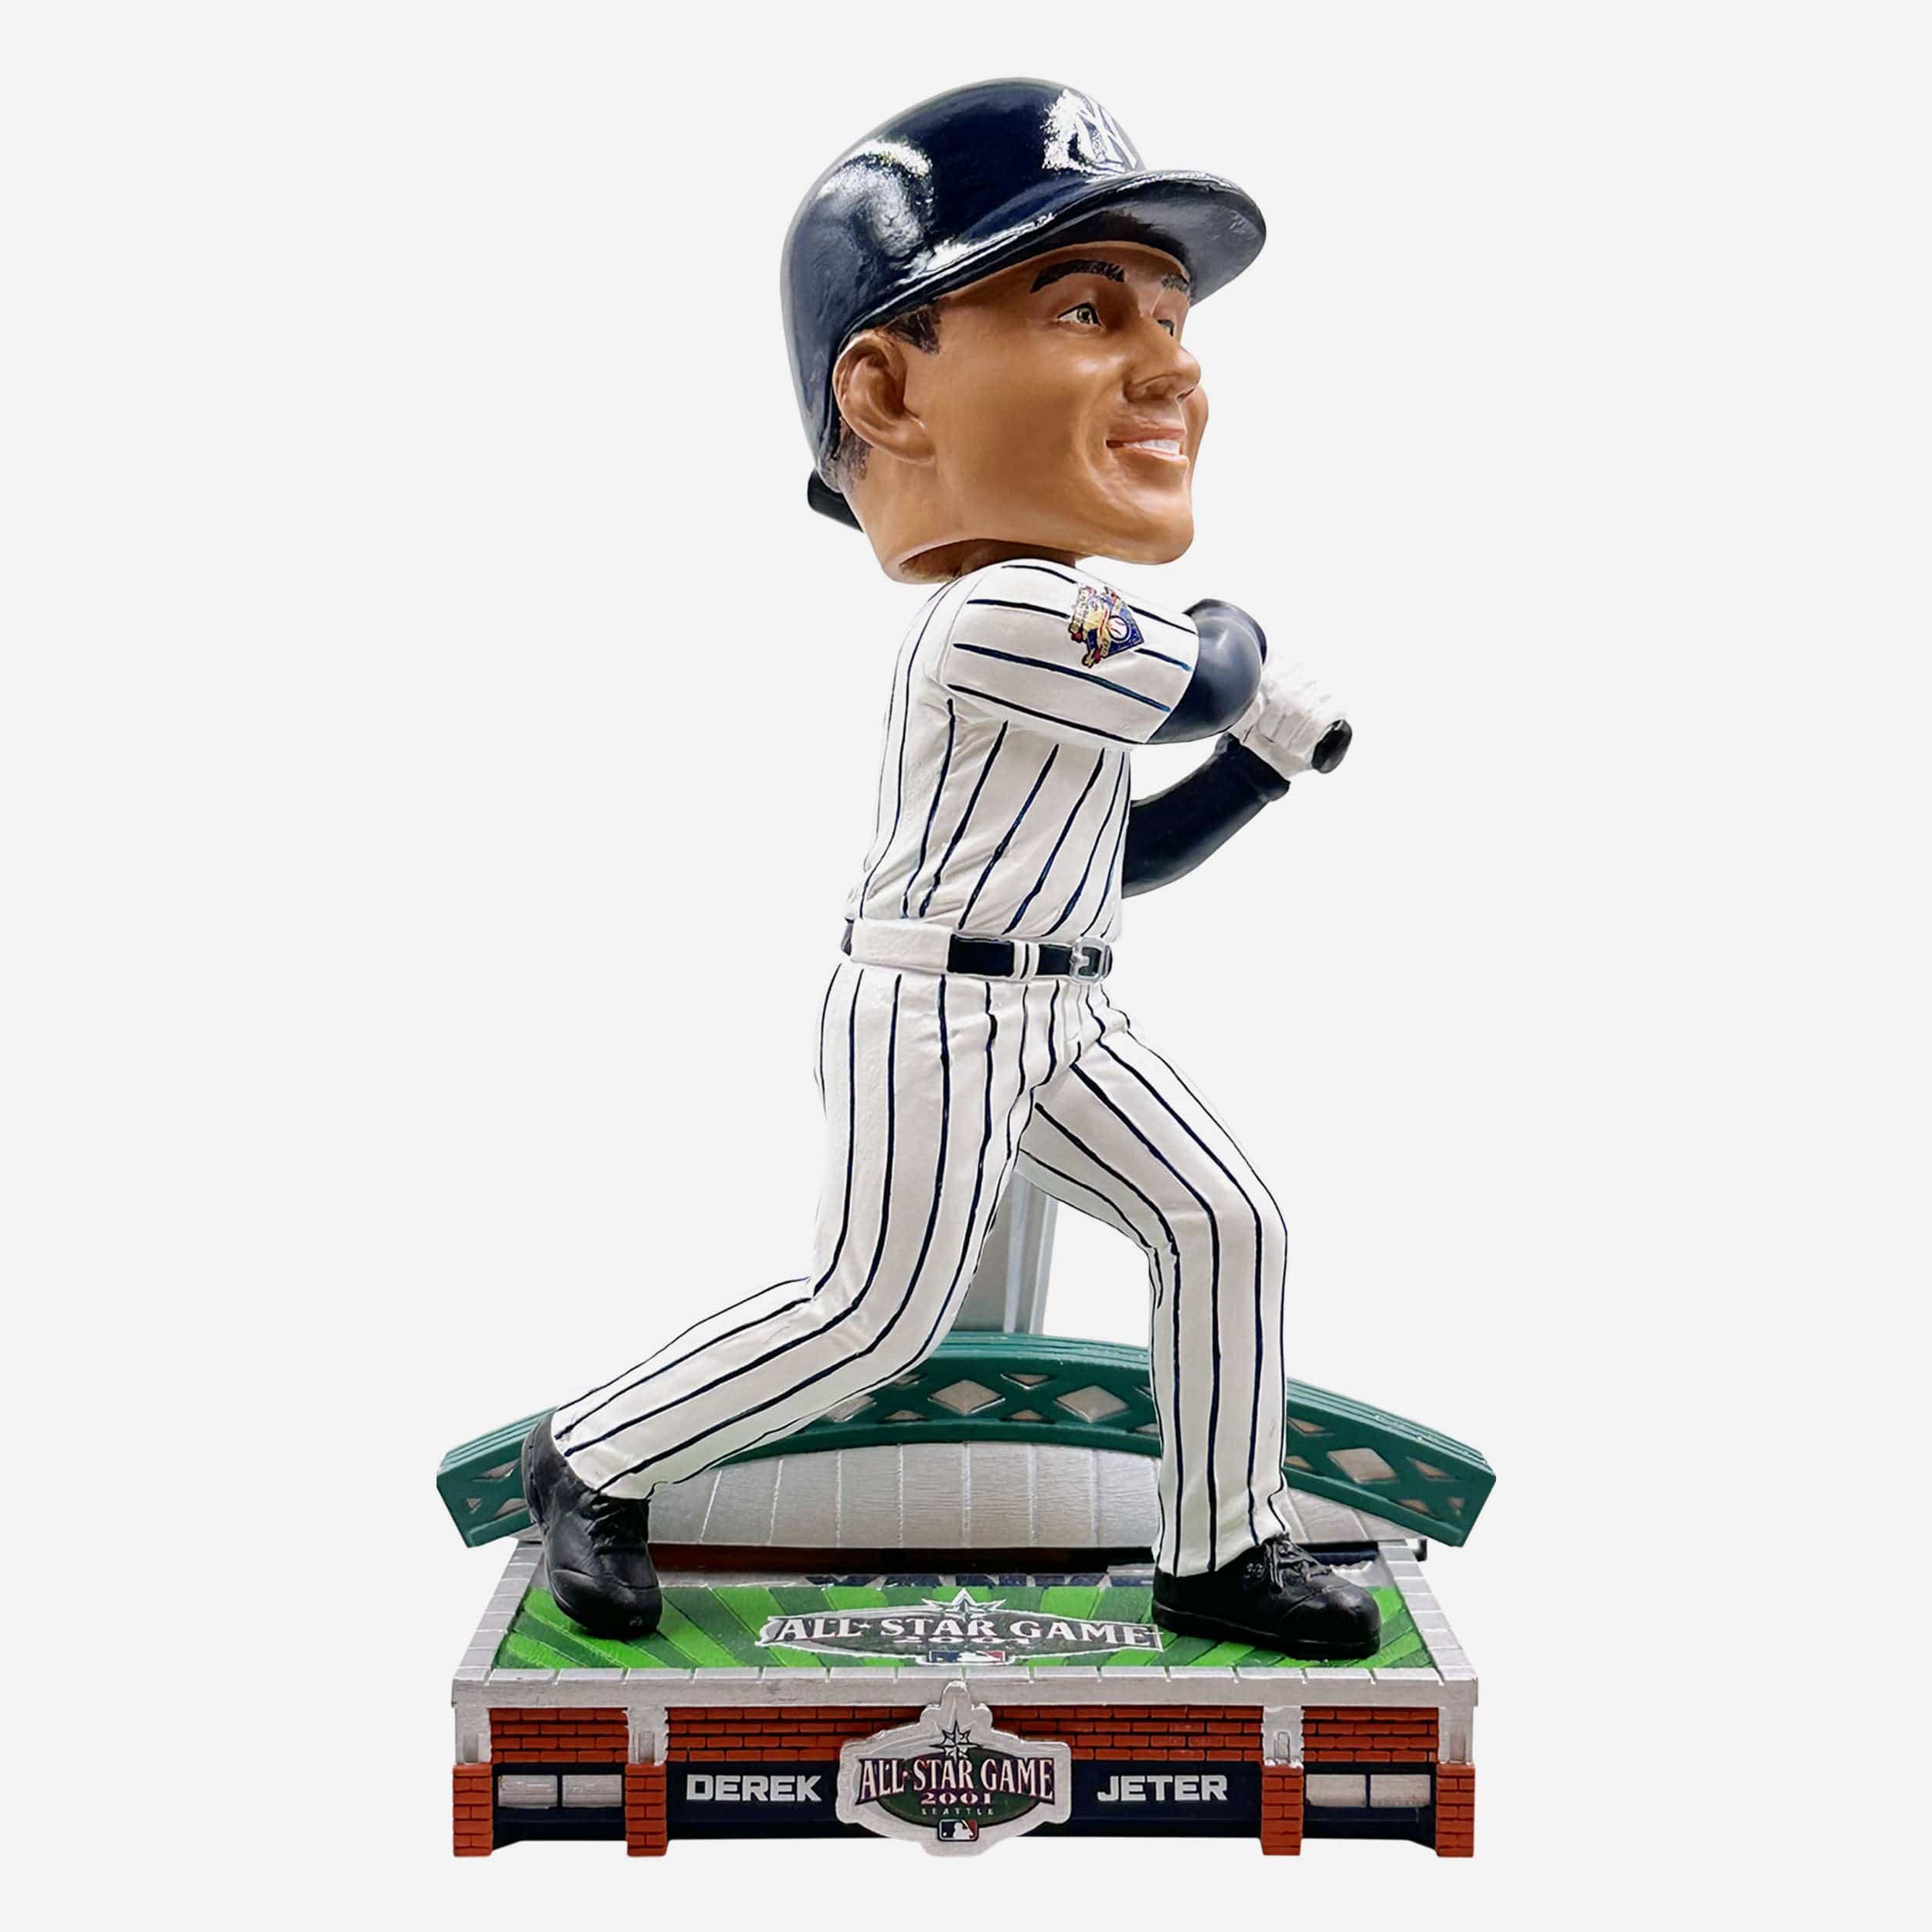 Derek Jeter New York Yankees 2001 MLB All-Star Game Commemorative Bobblehead Officially Licensed by MLB